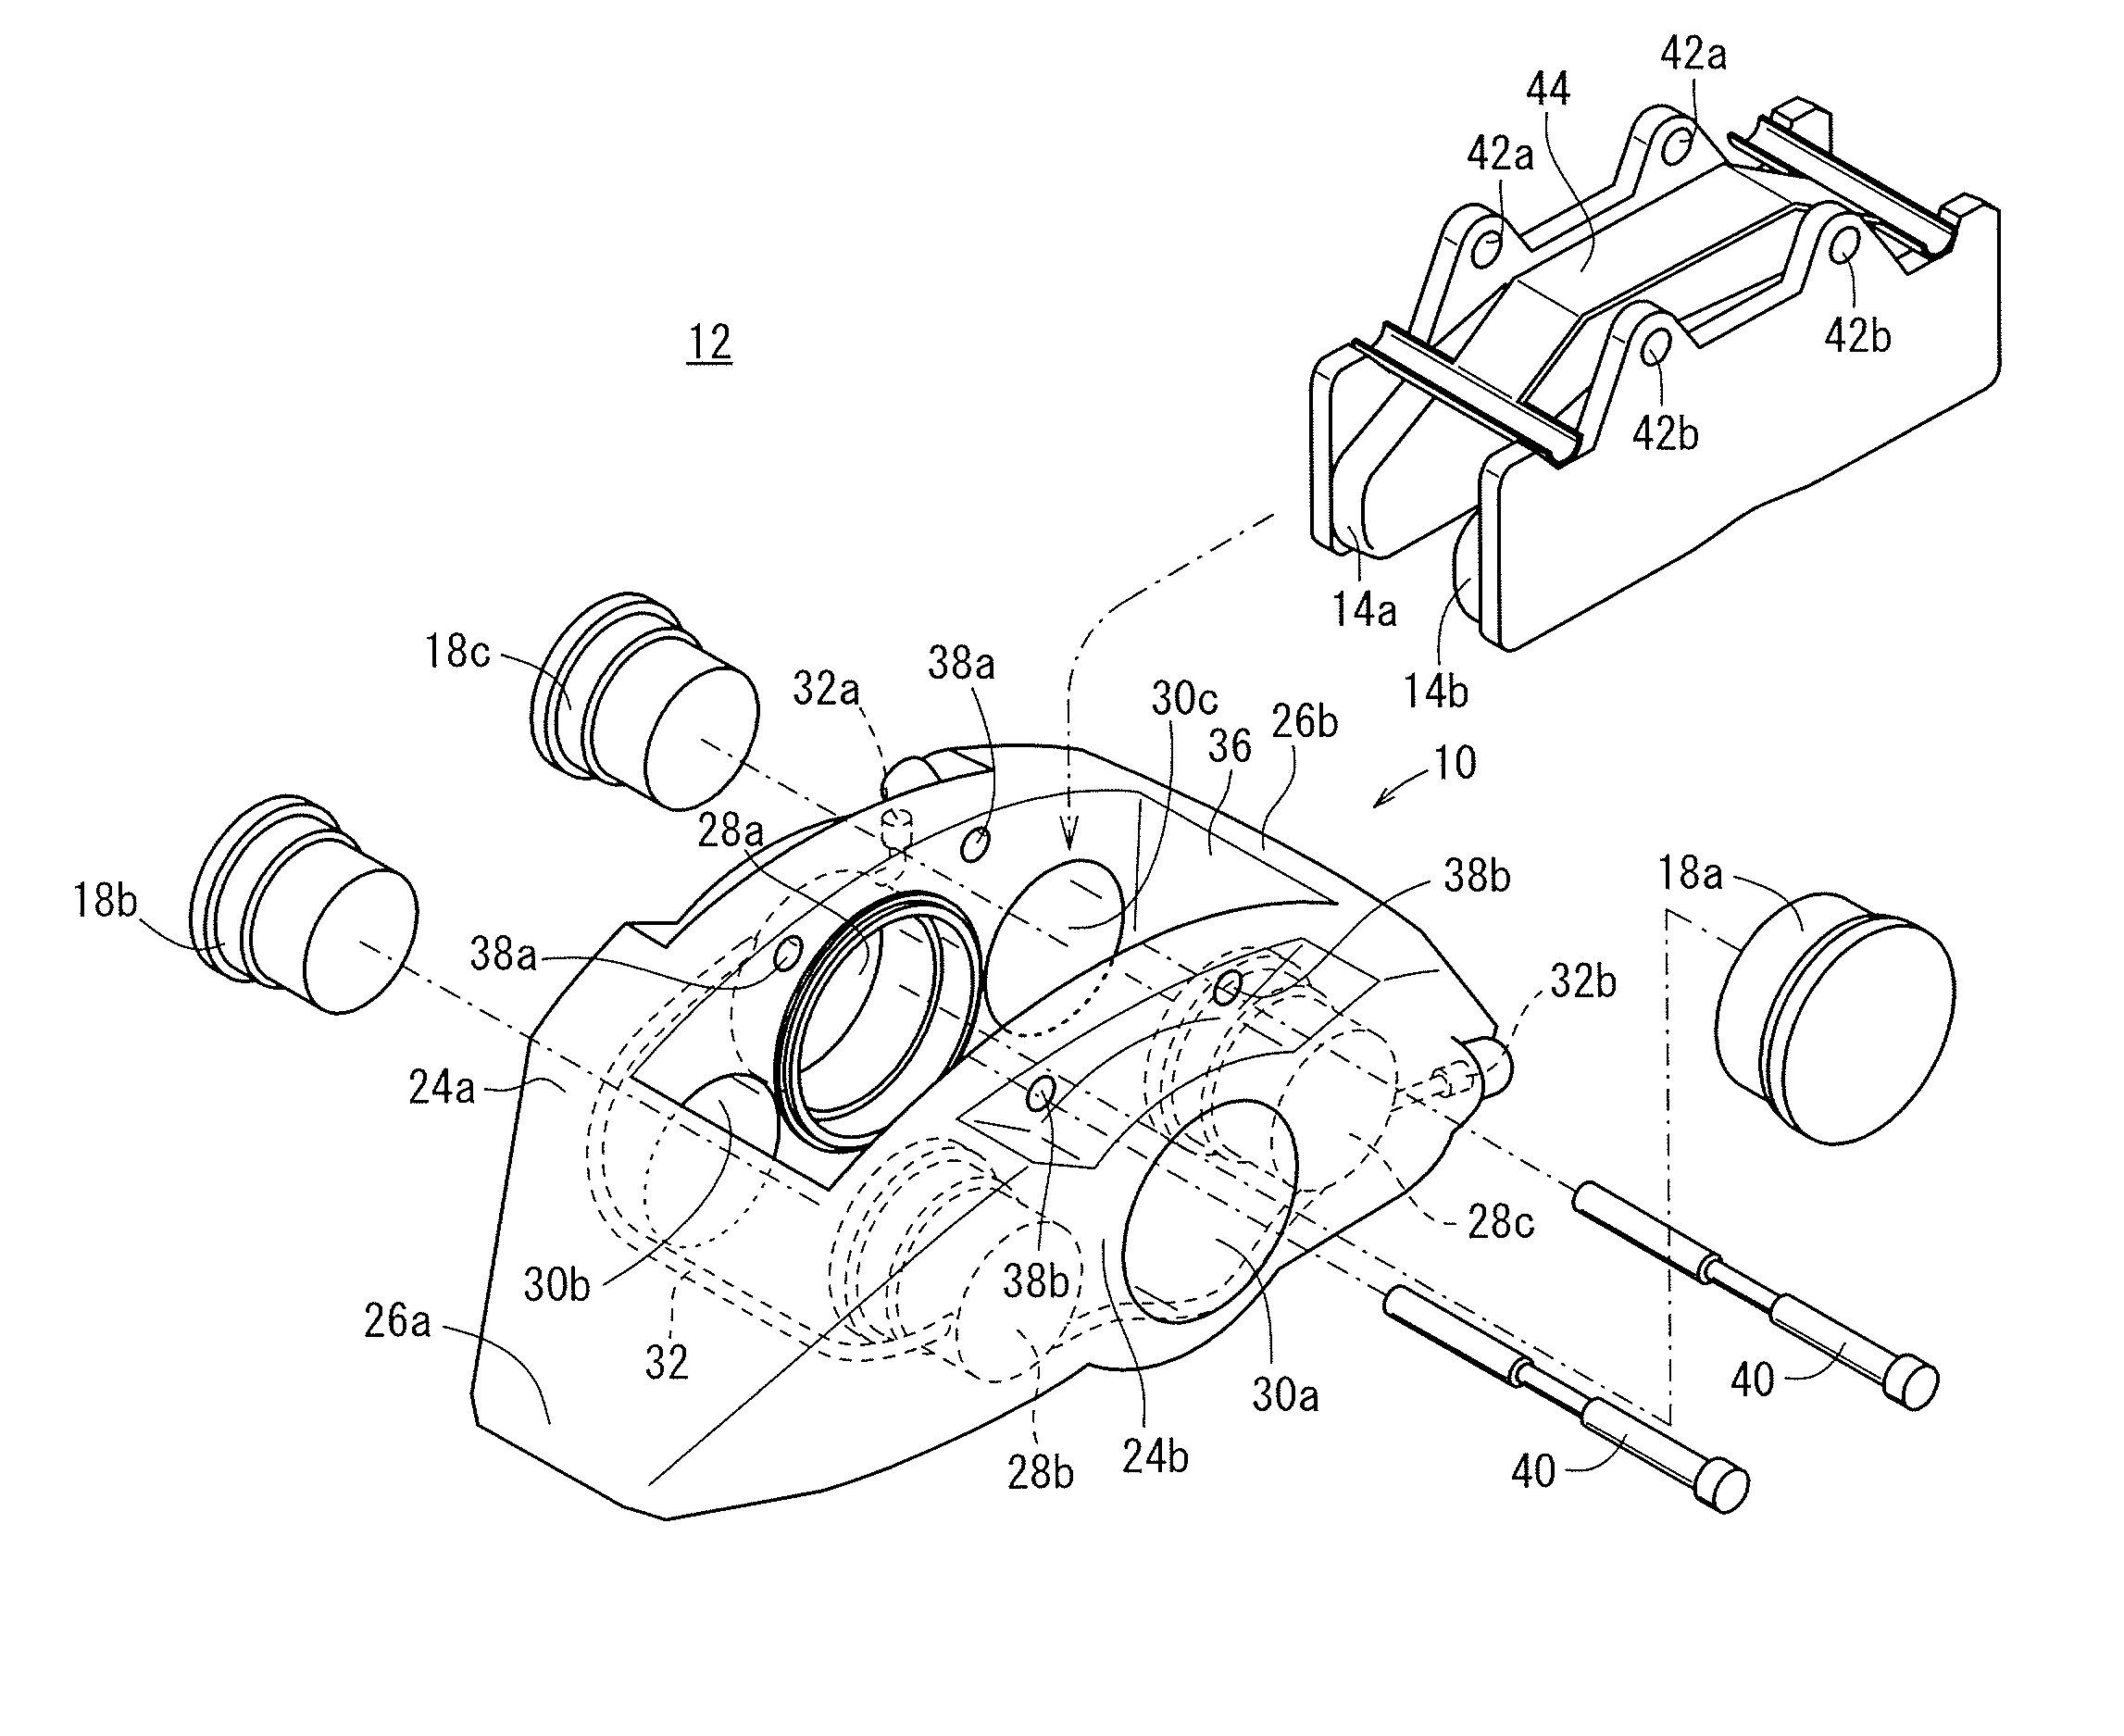 Opposed-piston caliper body